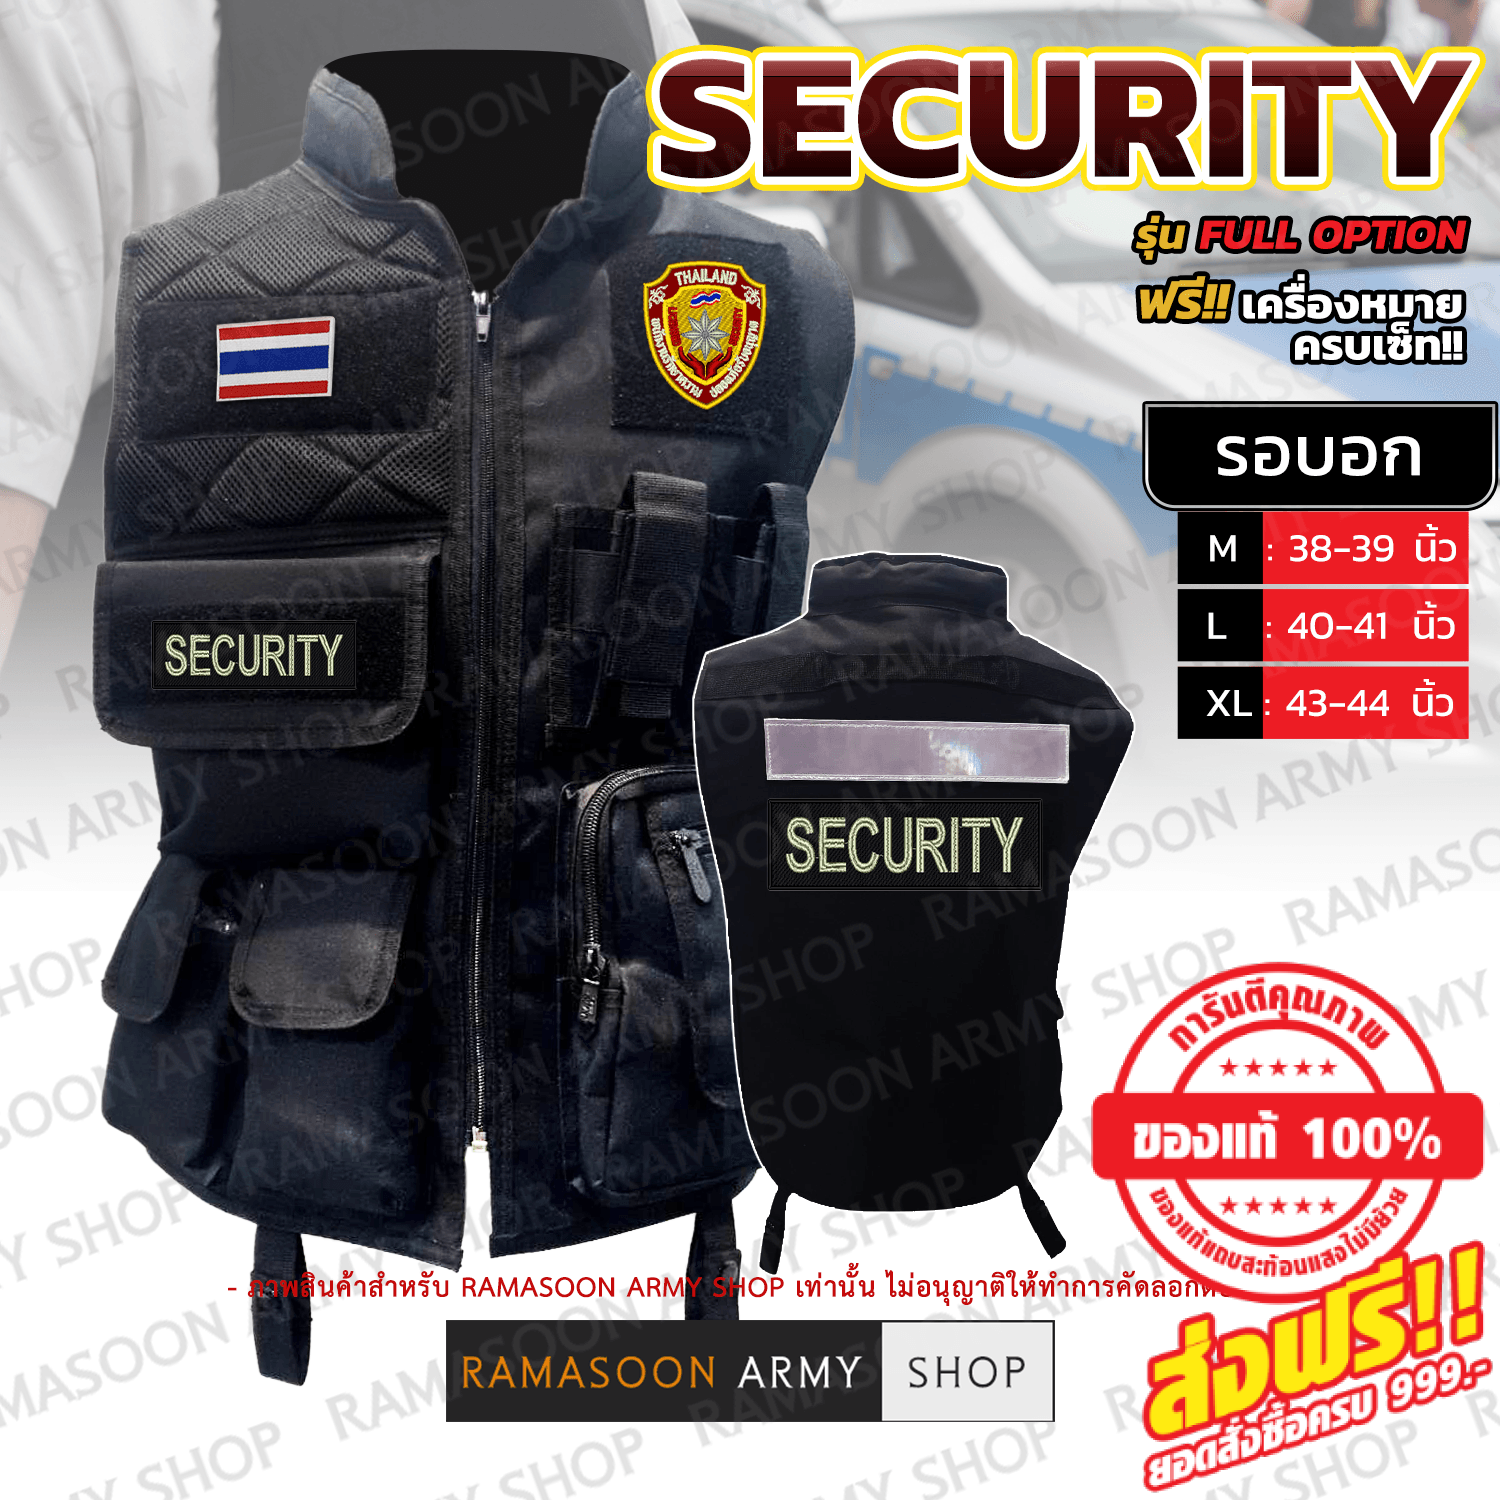 เสื้อกั๊ก พนักงานรักษาความปลอดภัย (พปร.) (รปภ.) (SECURITY) รุ่น Full Option